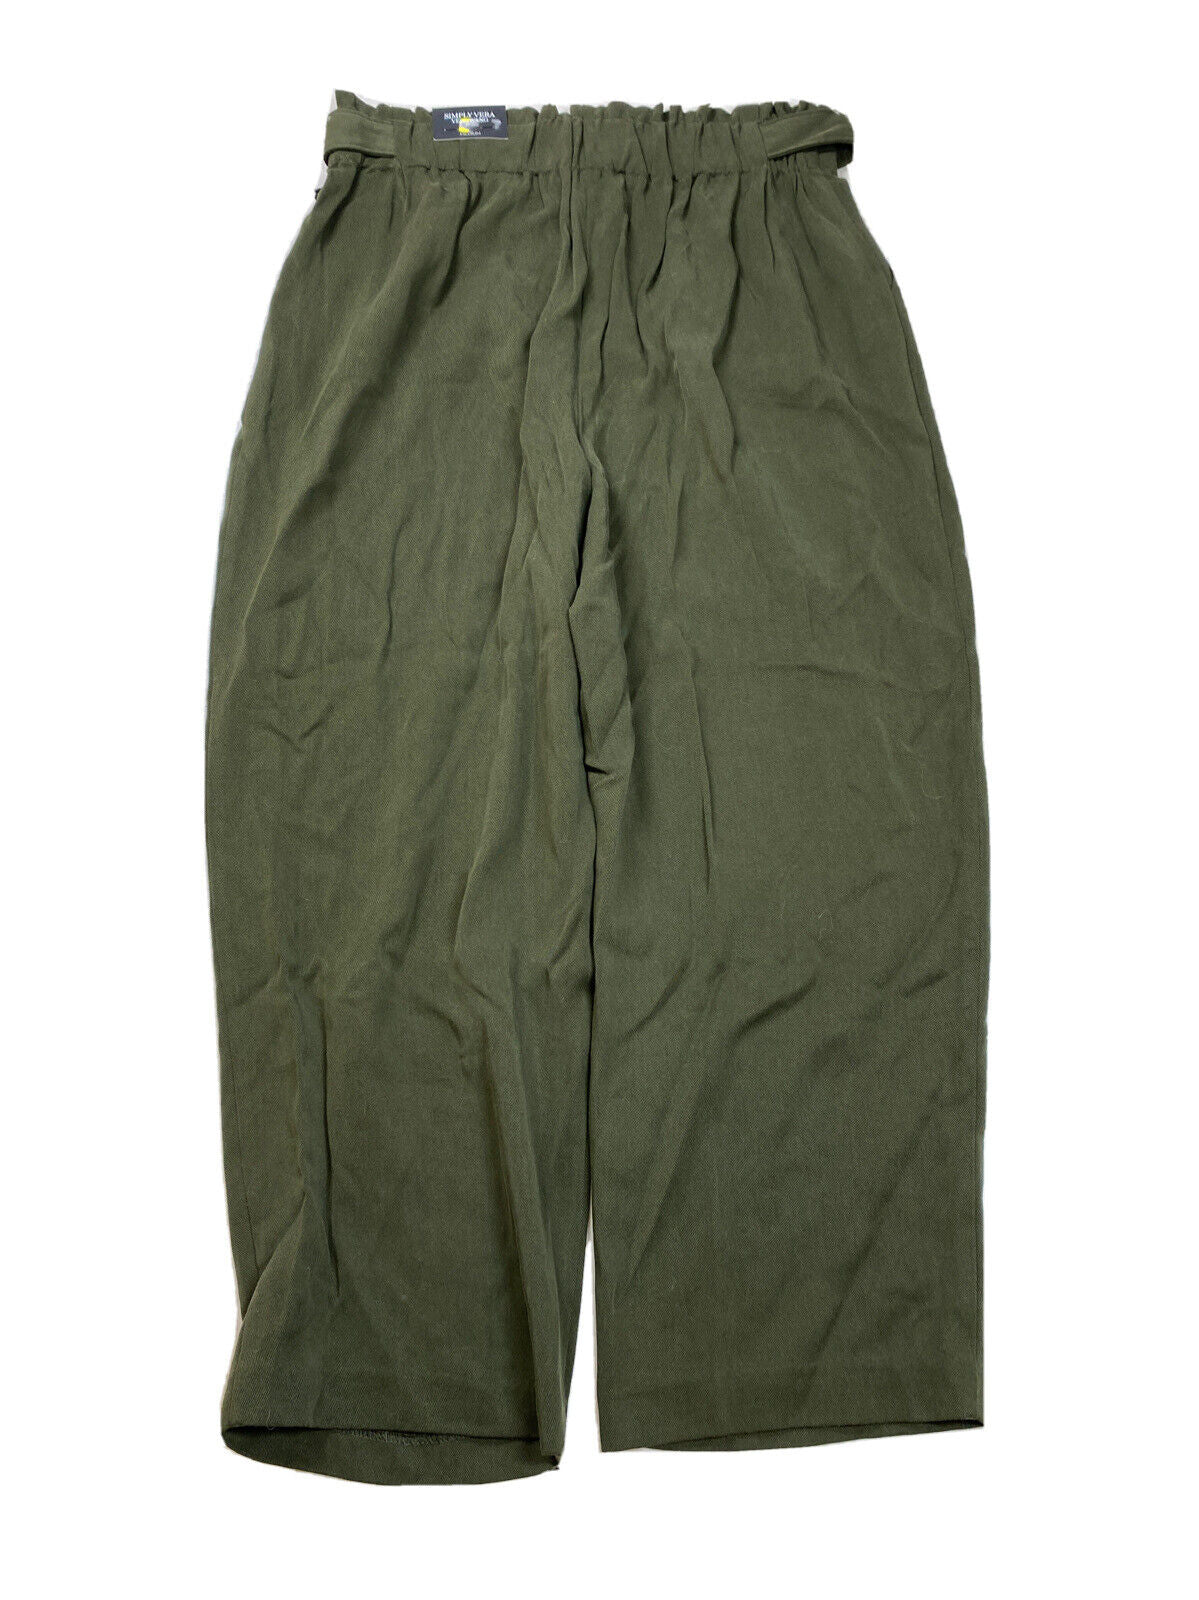 NUEVO Pantalones sueltos de pierna recta en verde oliva para mujer de Simply Vera Wang - M